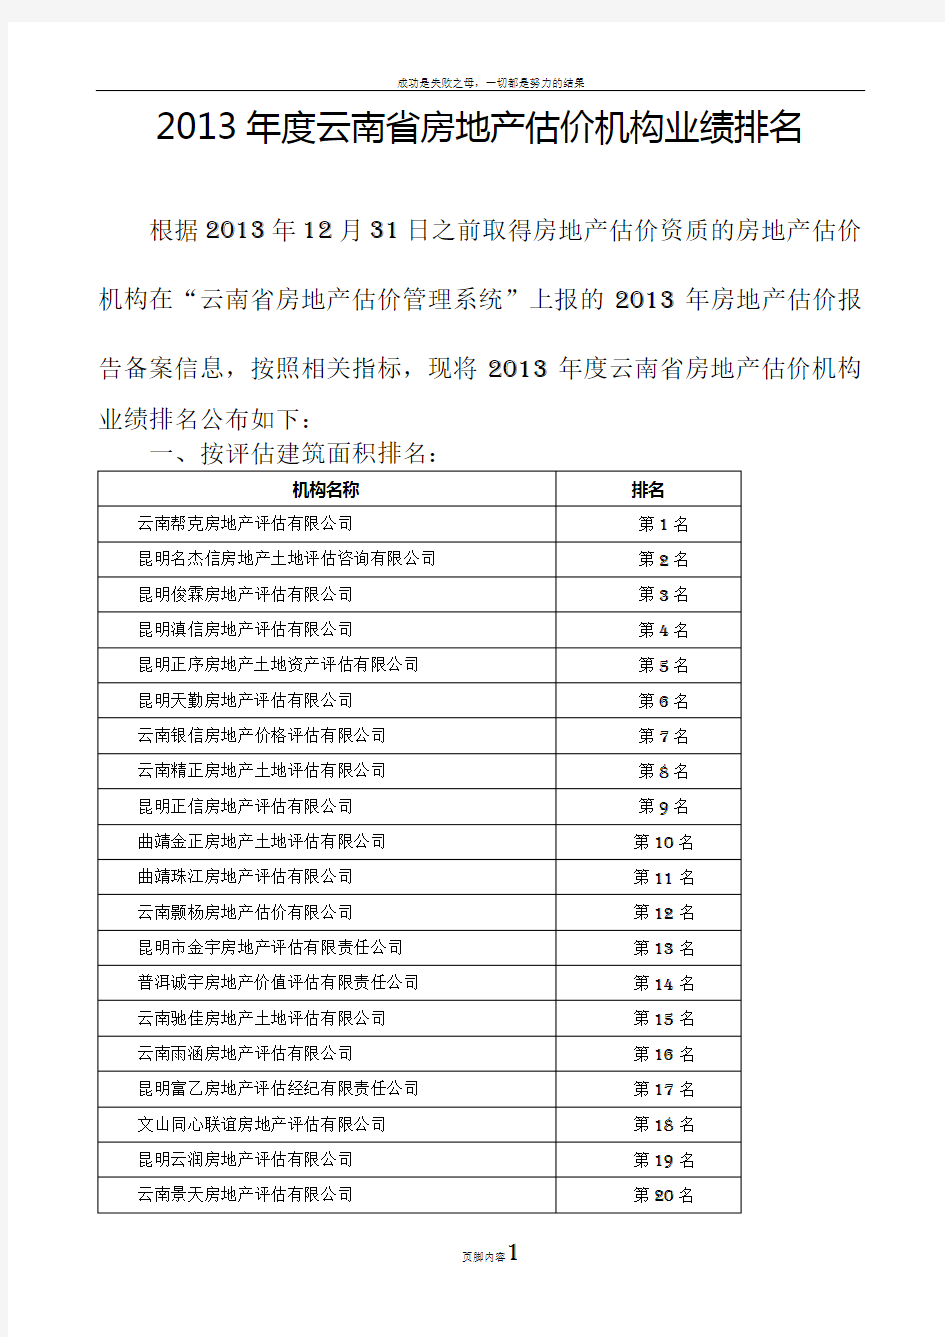 度云南省房地产估价机构业绩排名